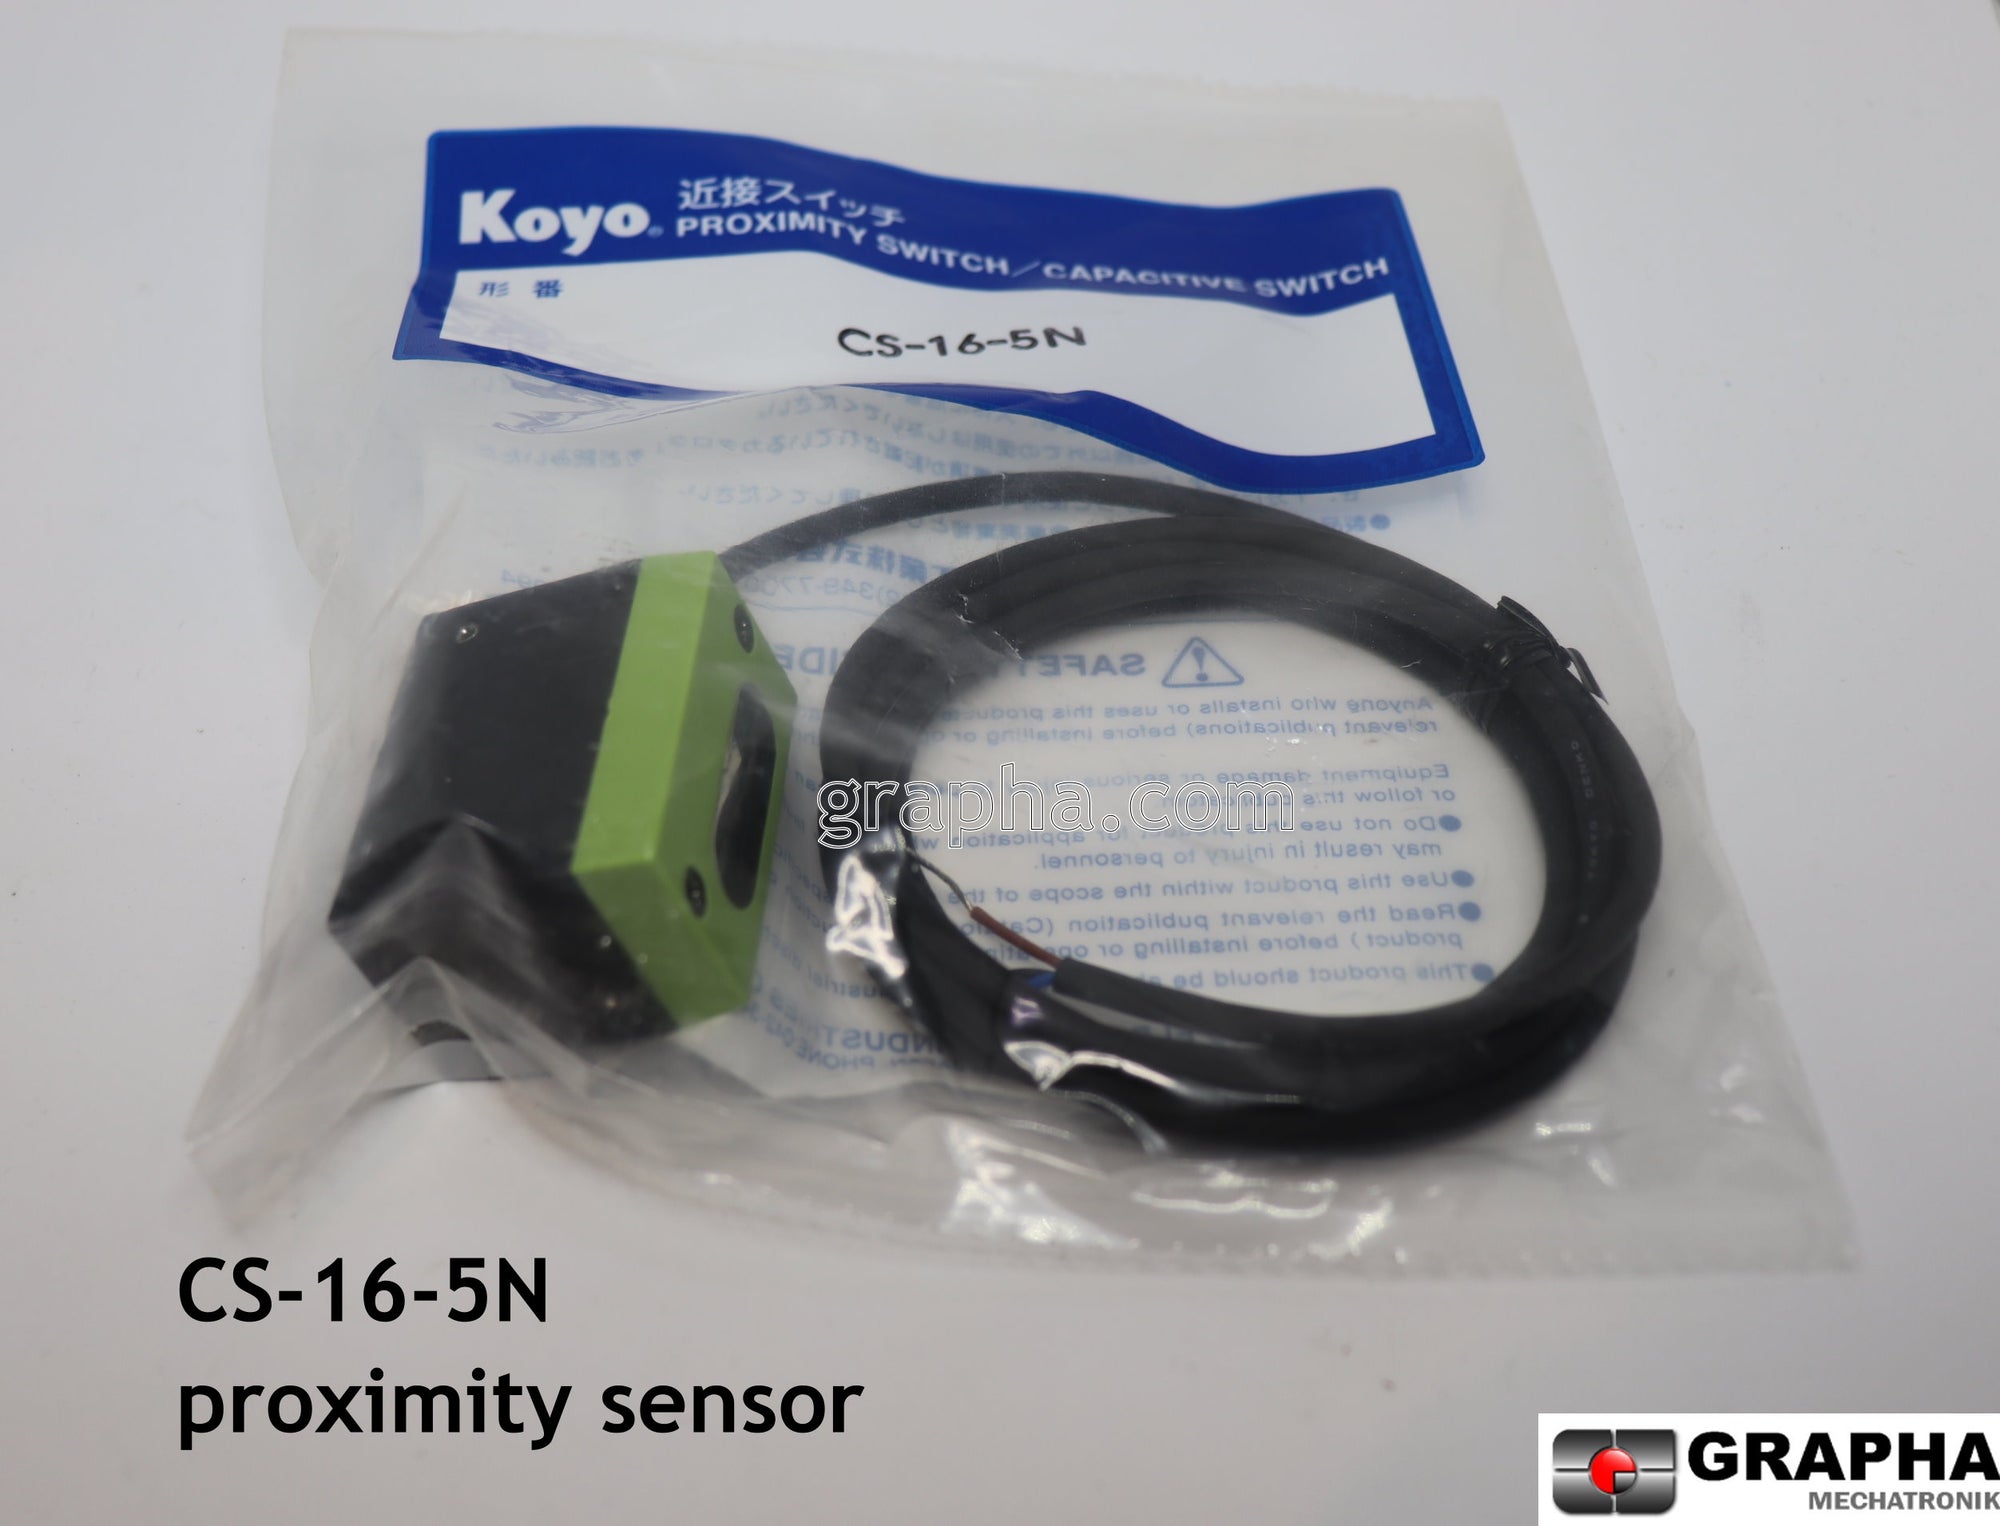 Koyo proximity sensor: CS-16-5N